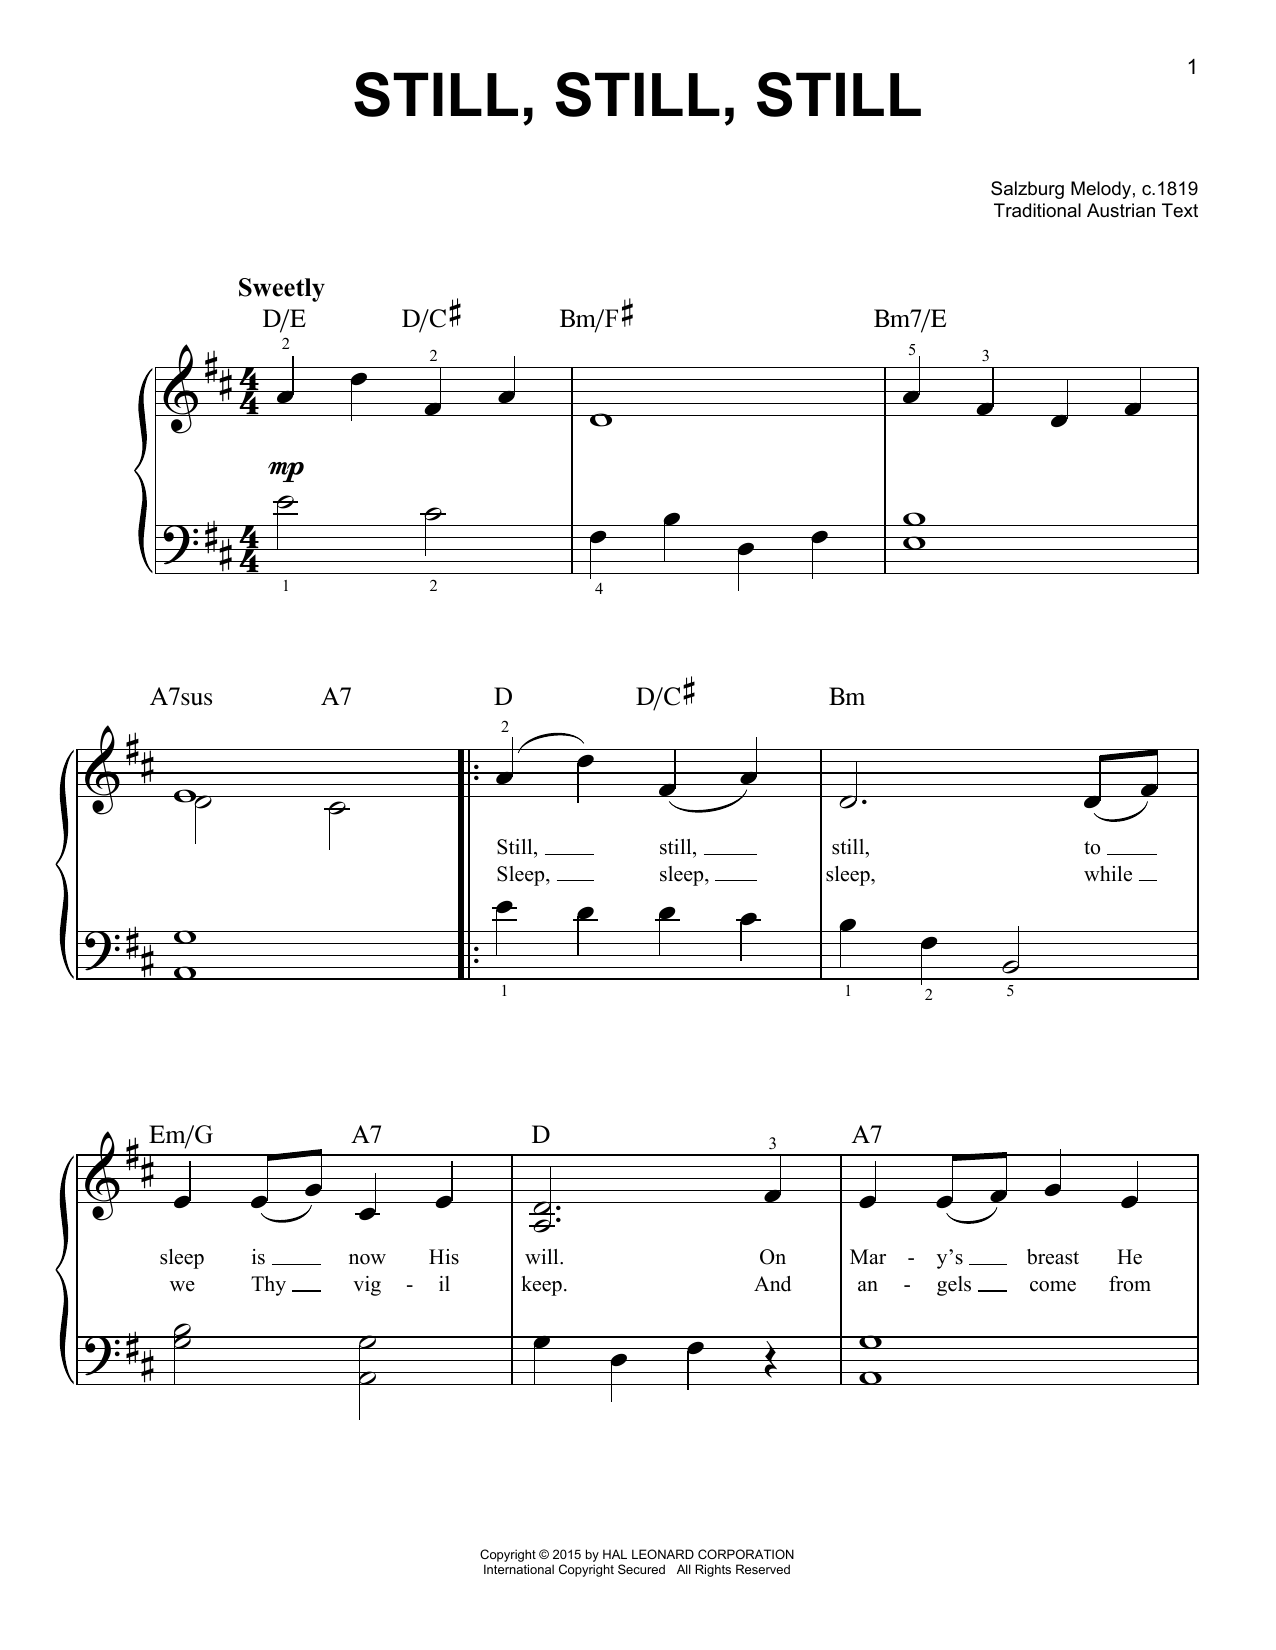 Salzburg Melody c.1819 Still, Still, Still sheet music notes and chords arranged for Very Easy Piano